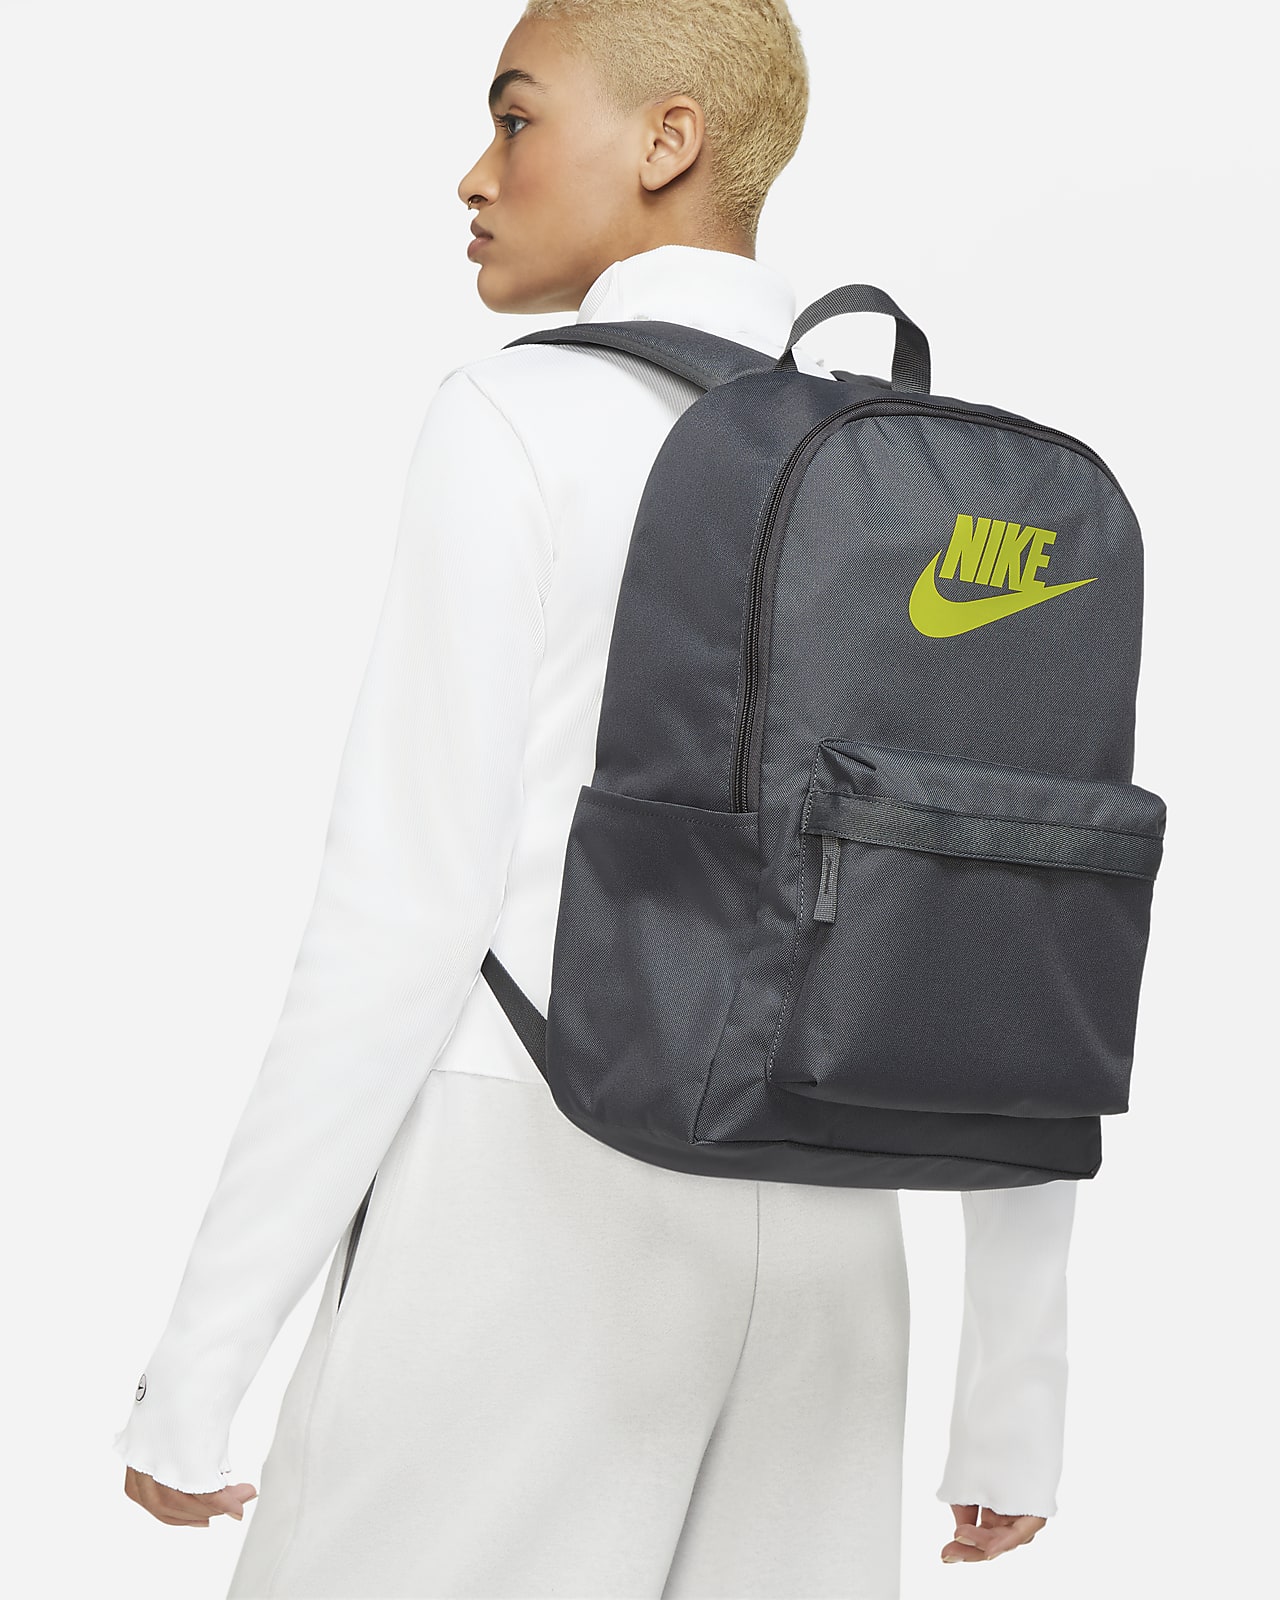 Sacoche Nike Heritage - Sacoche - Sacs de sport et sacs à dos - Accessoires